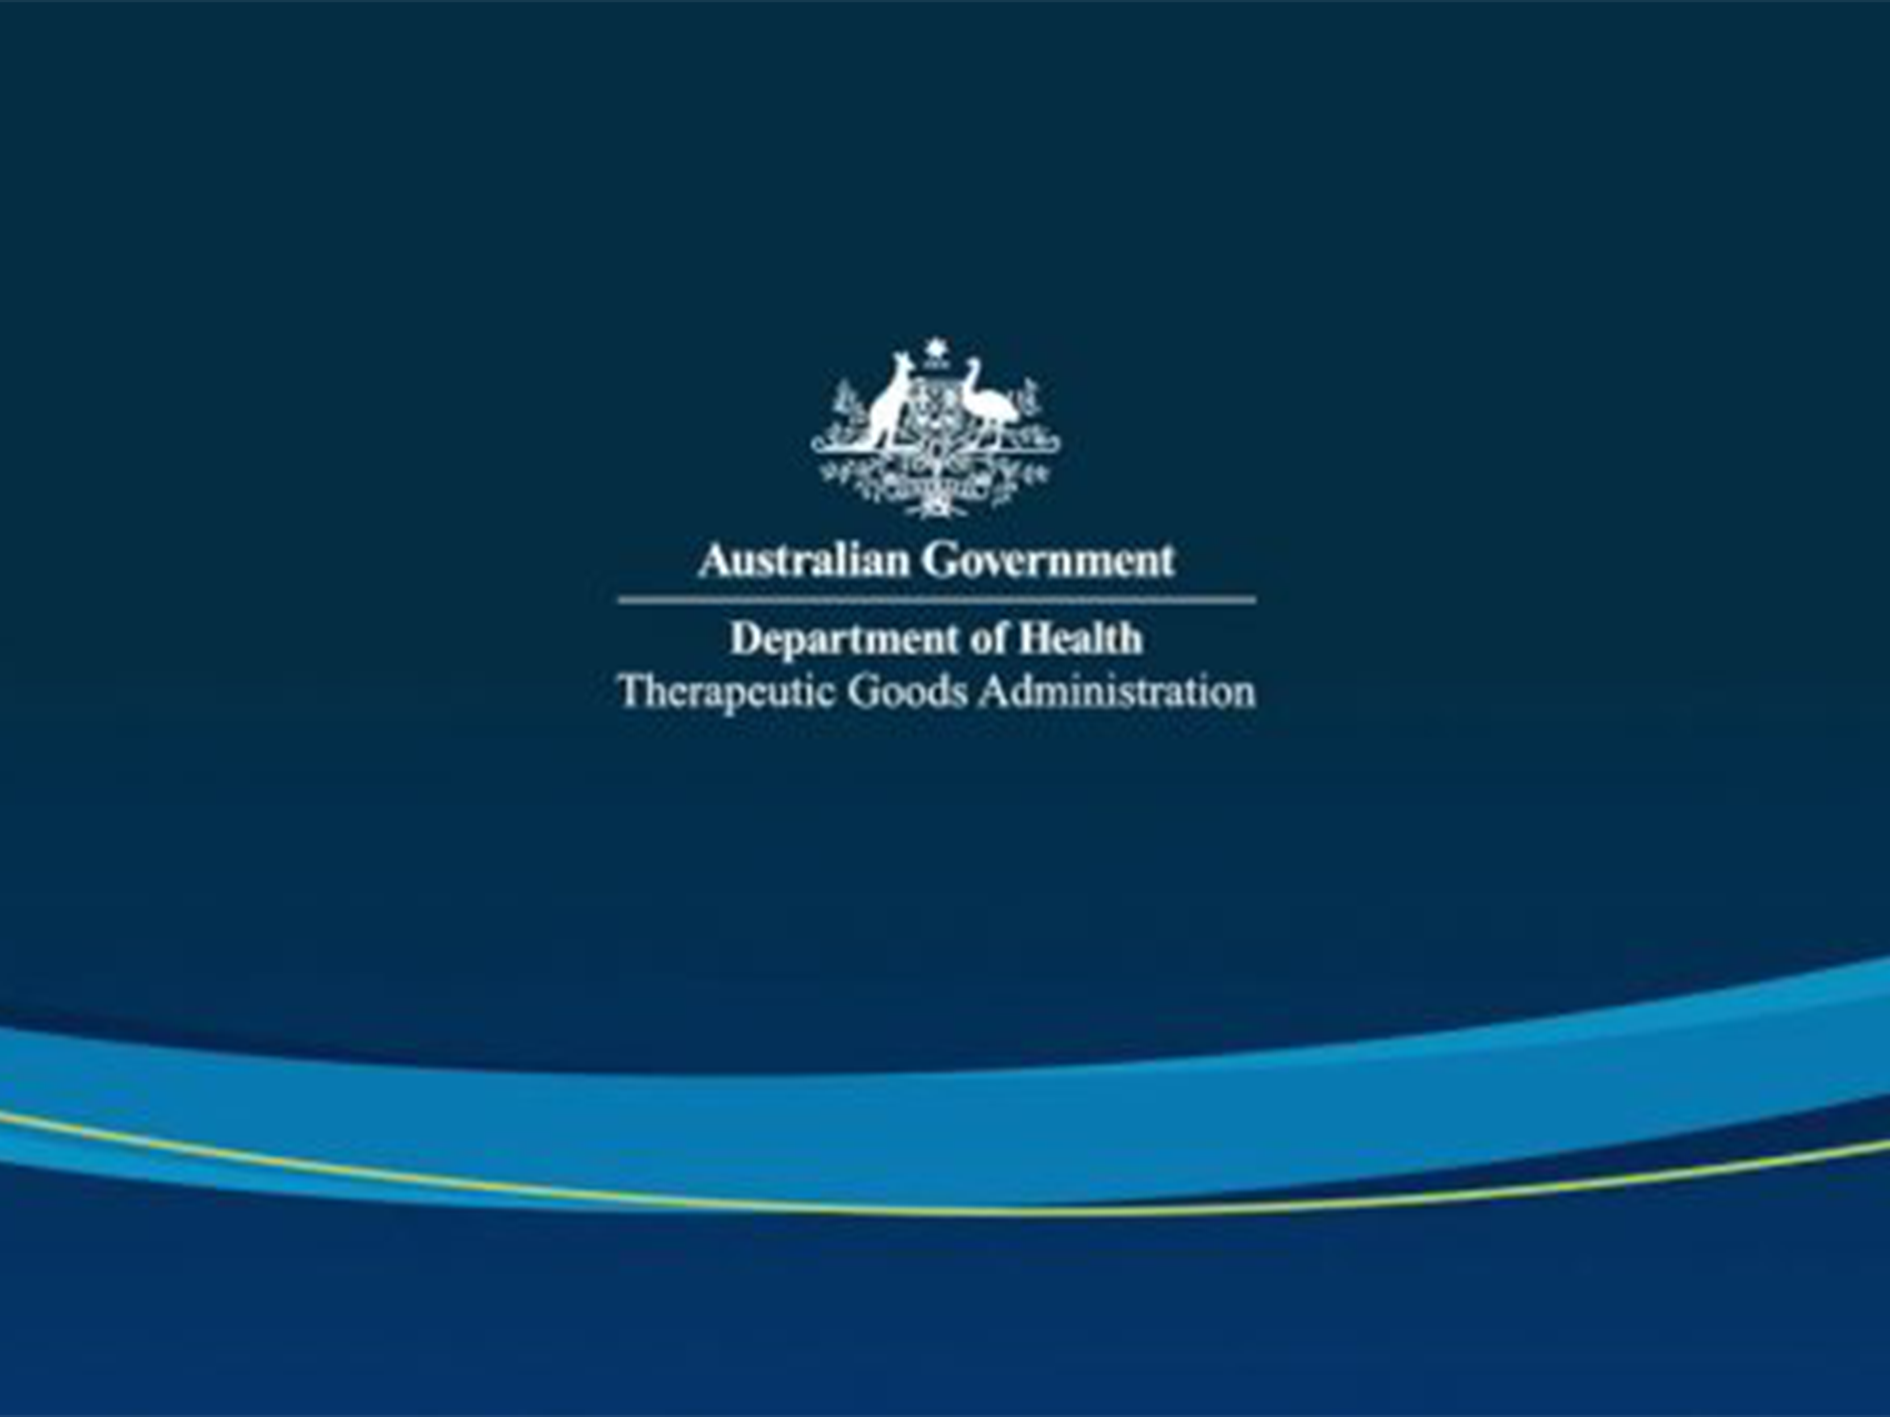 اداره کالاهای درمانی استرالیا (TGA) برای محصولات و کیت های آزمایشگاهی با کلاس خطر A اظهارنامه تطابق را اعلام کرد